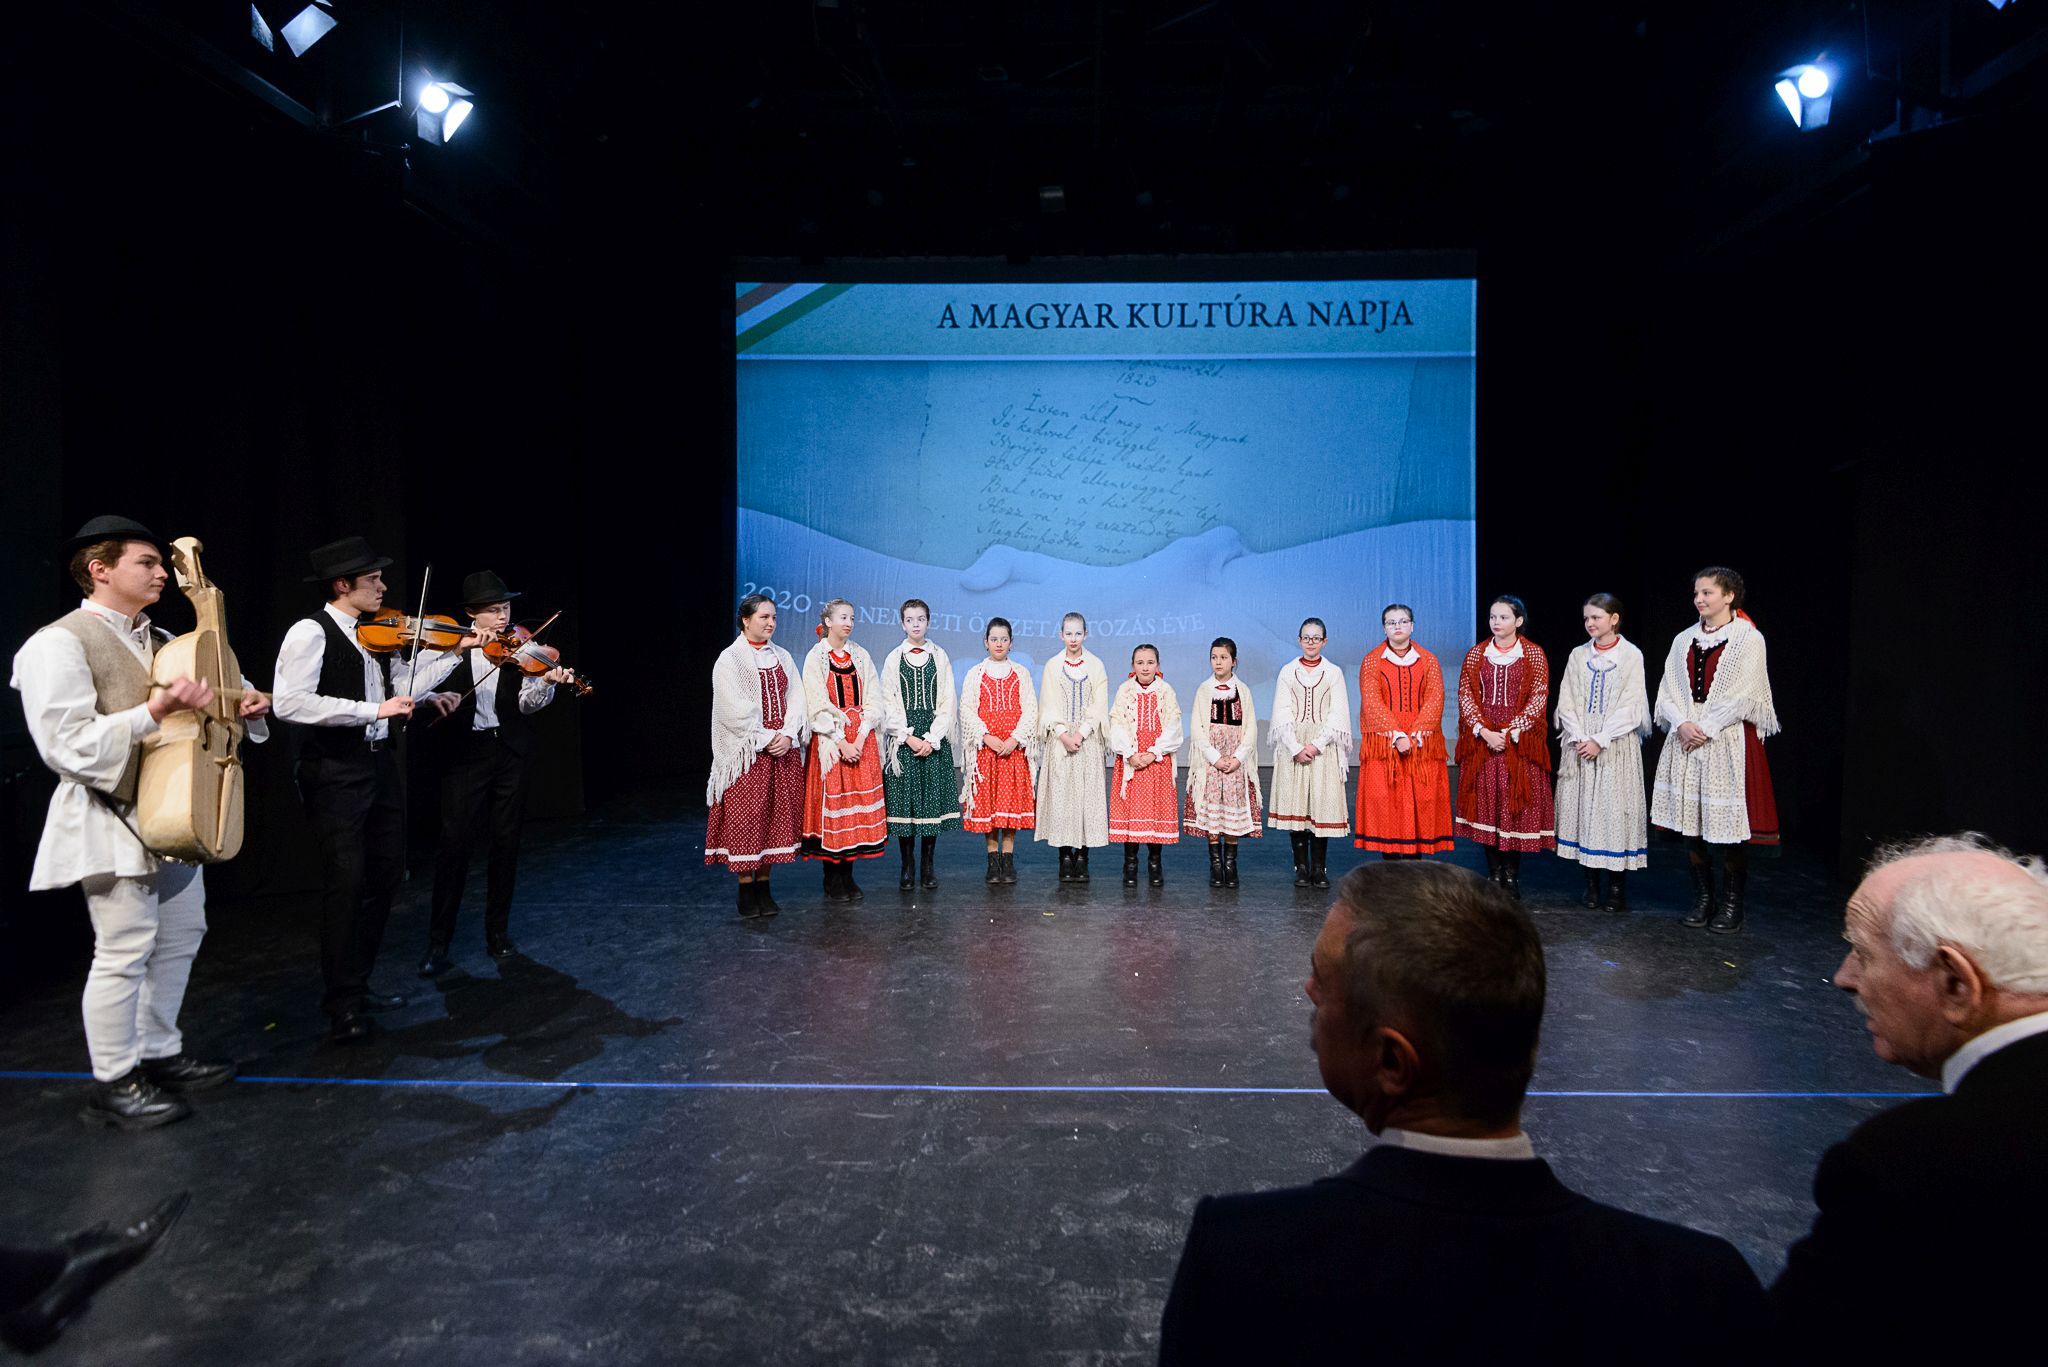 Magyar kultúra napja az összetartozás jegyében